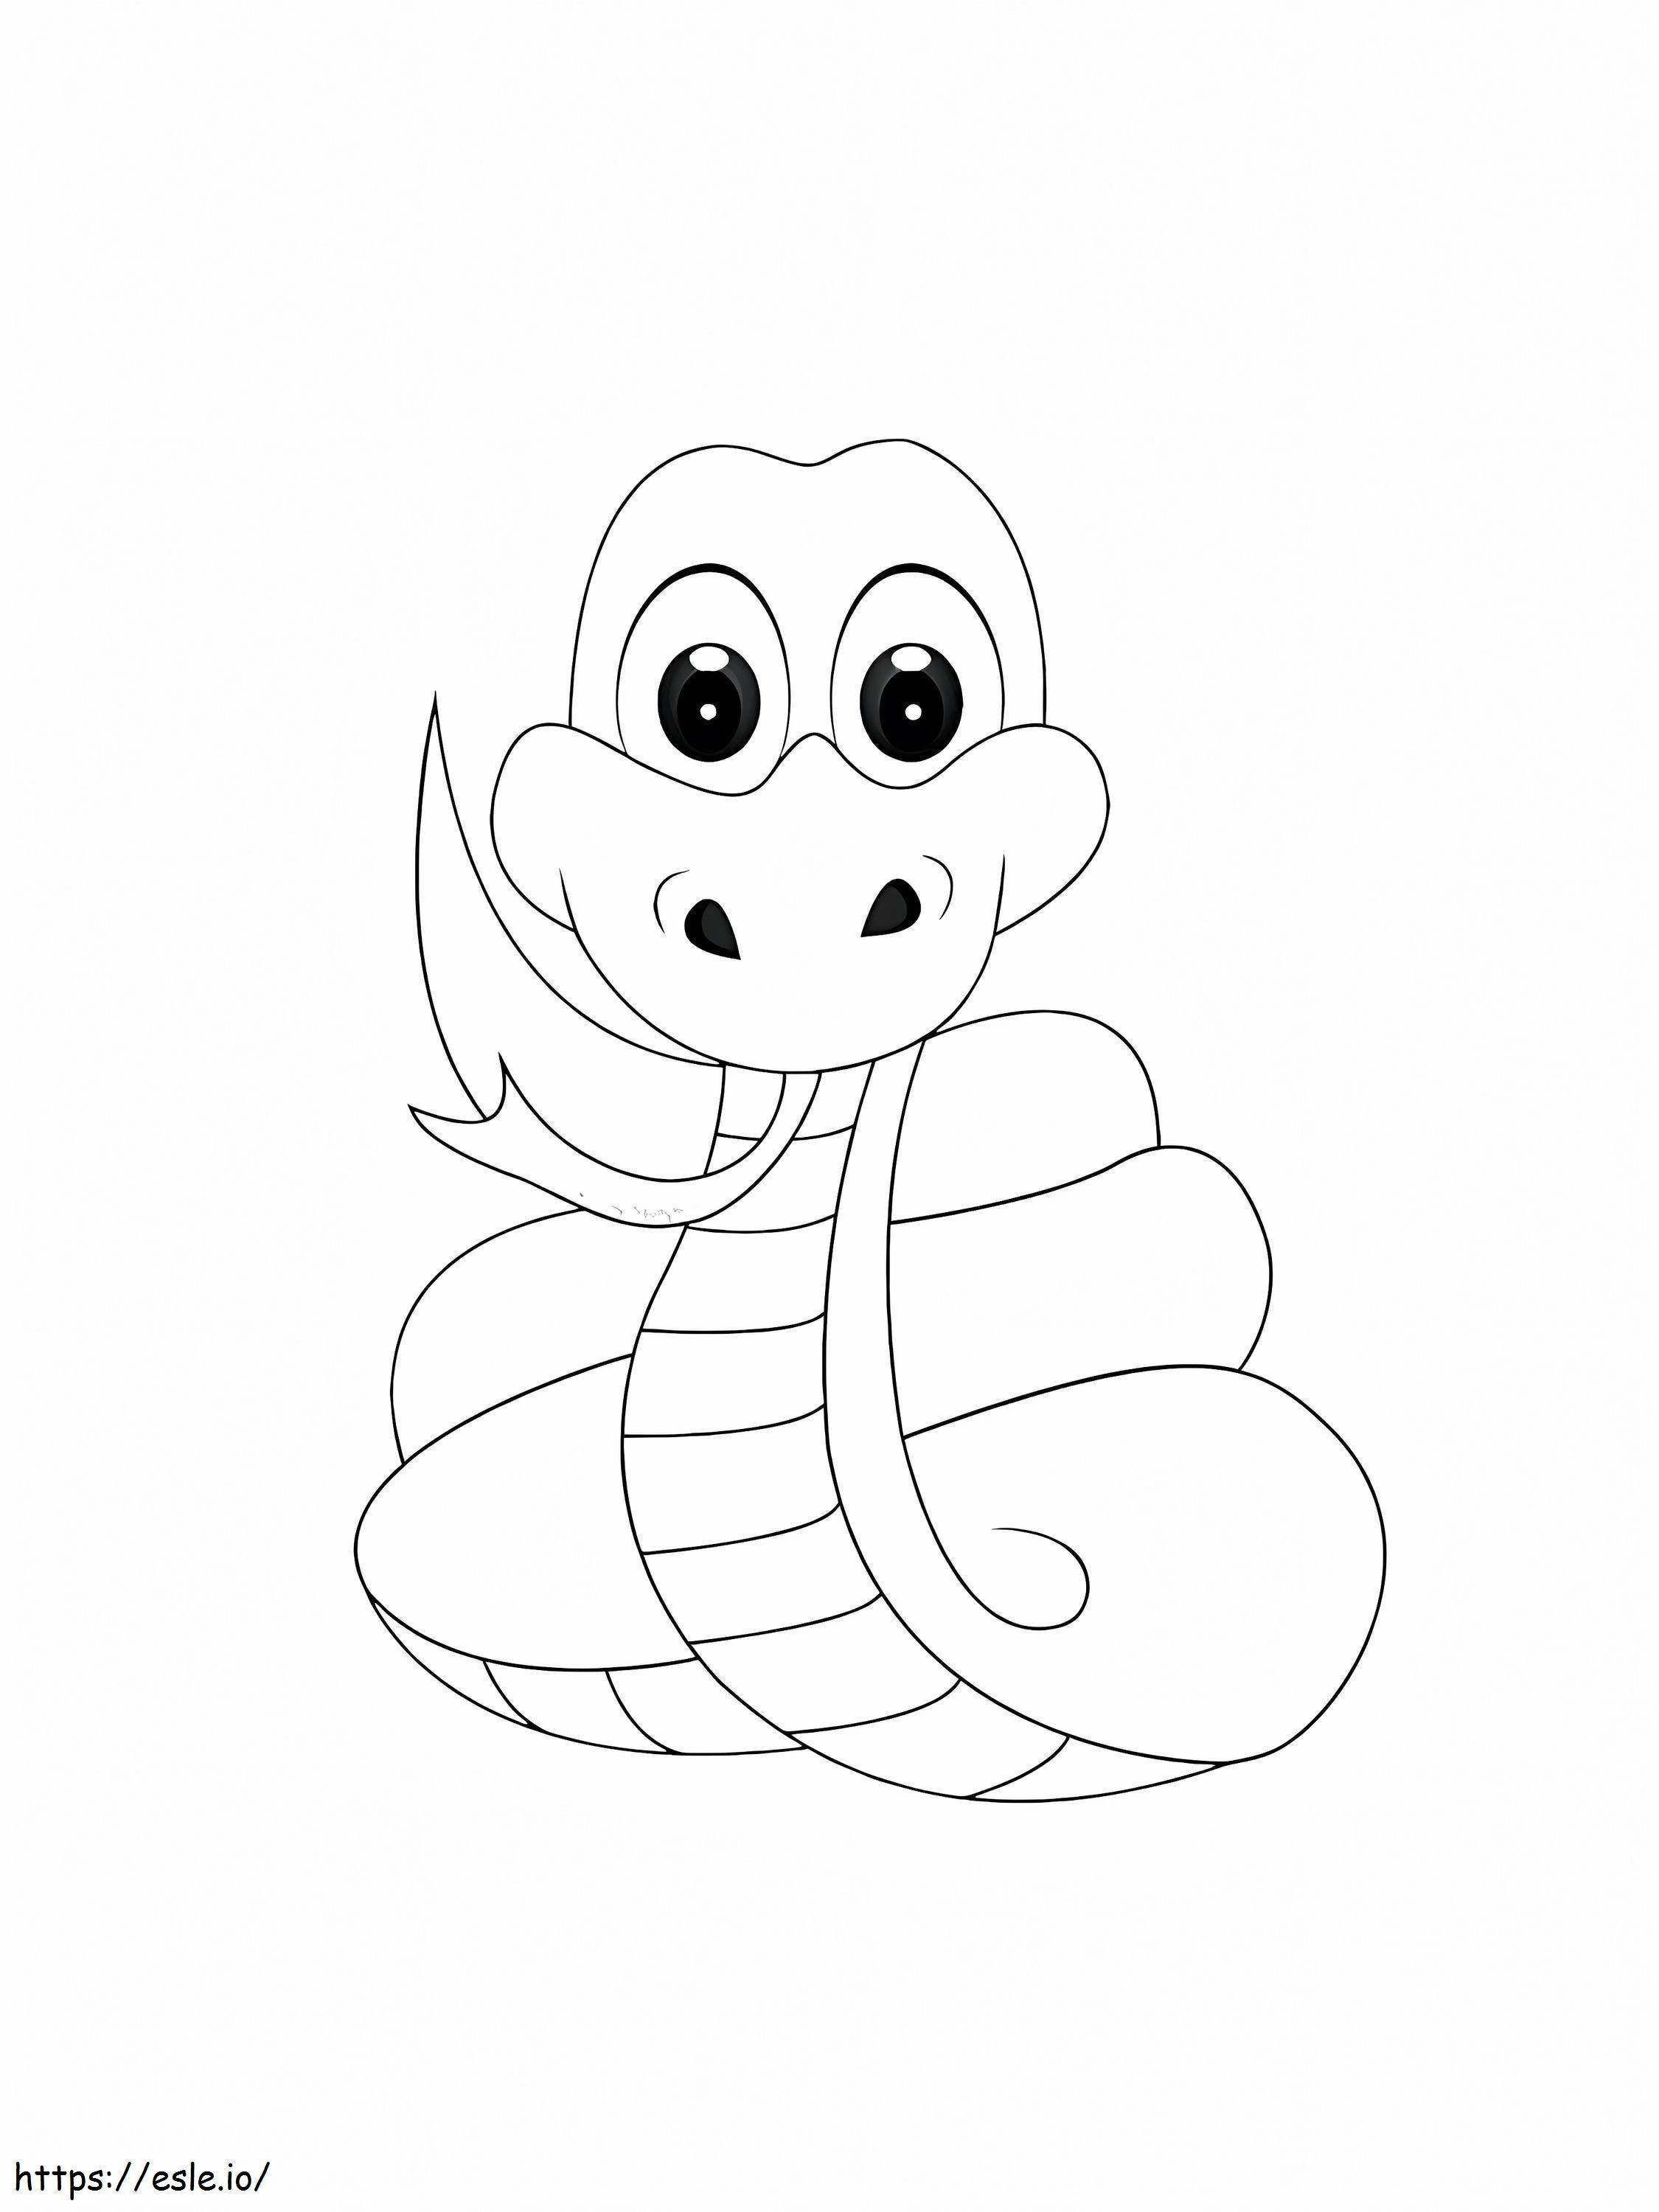 Coloriage Beau serpent à imprimer dessin